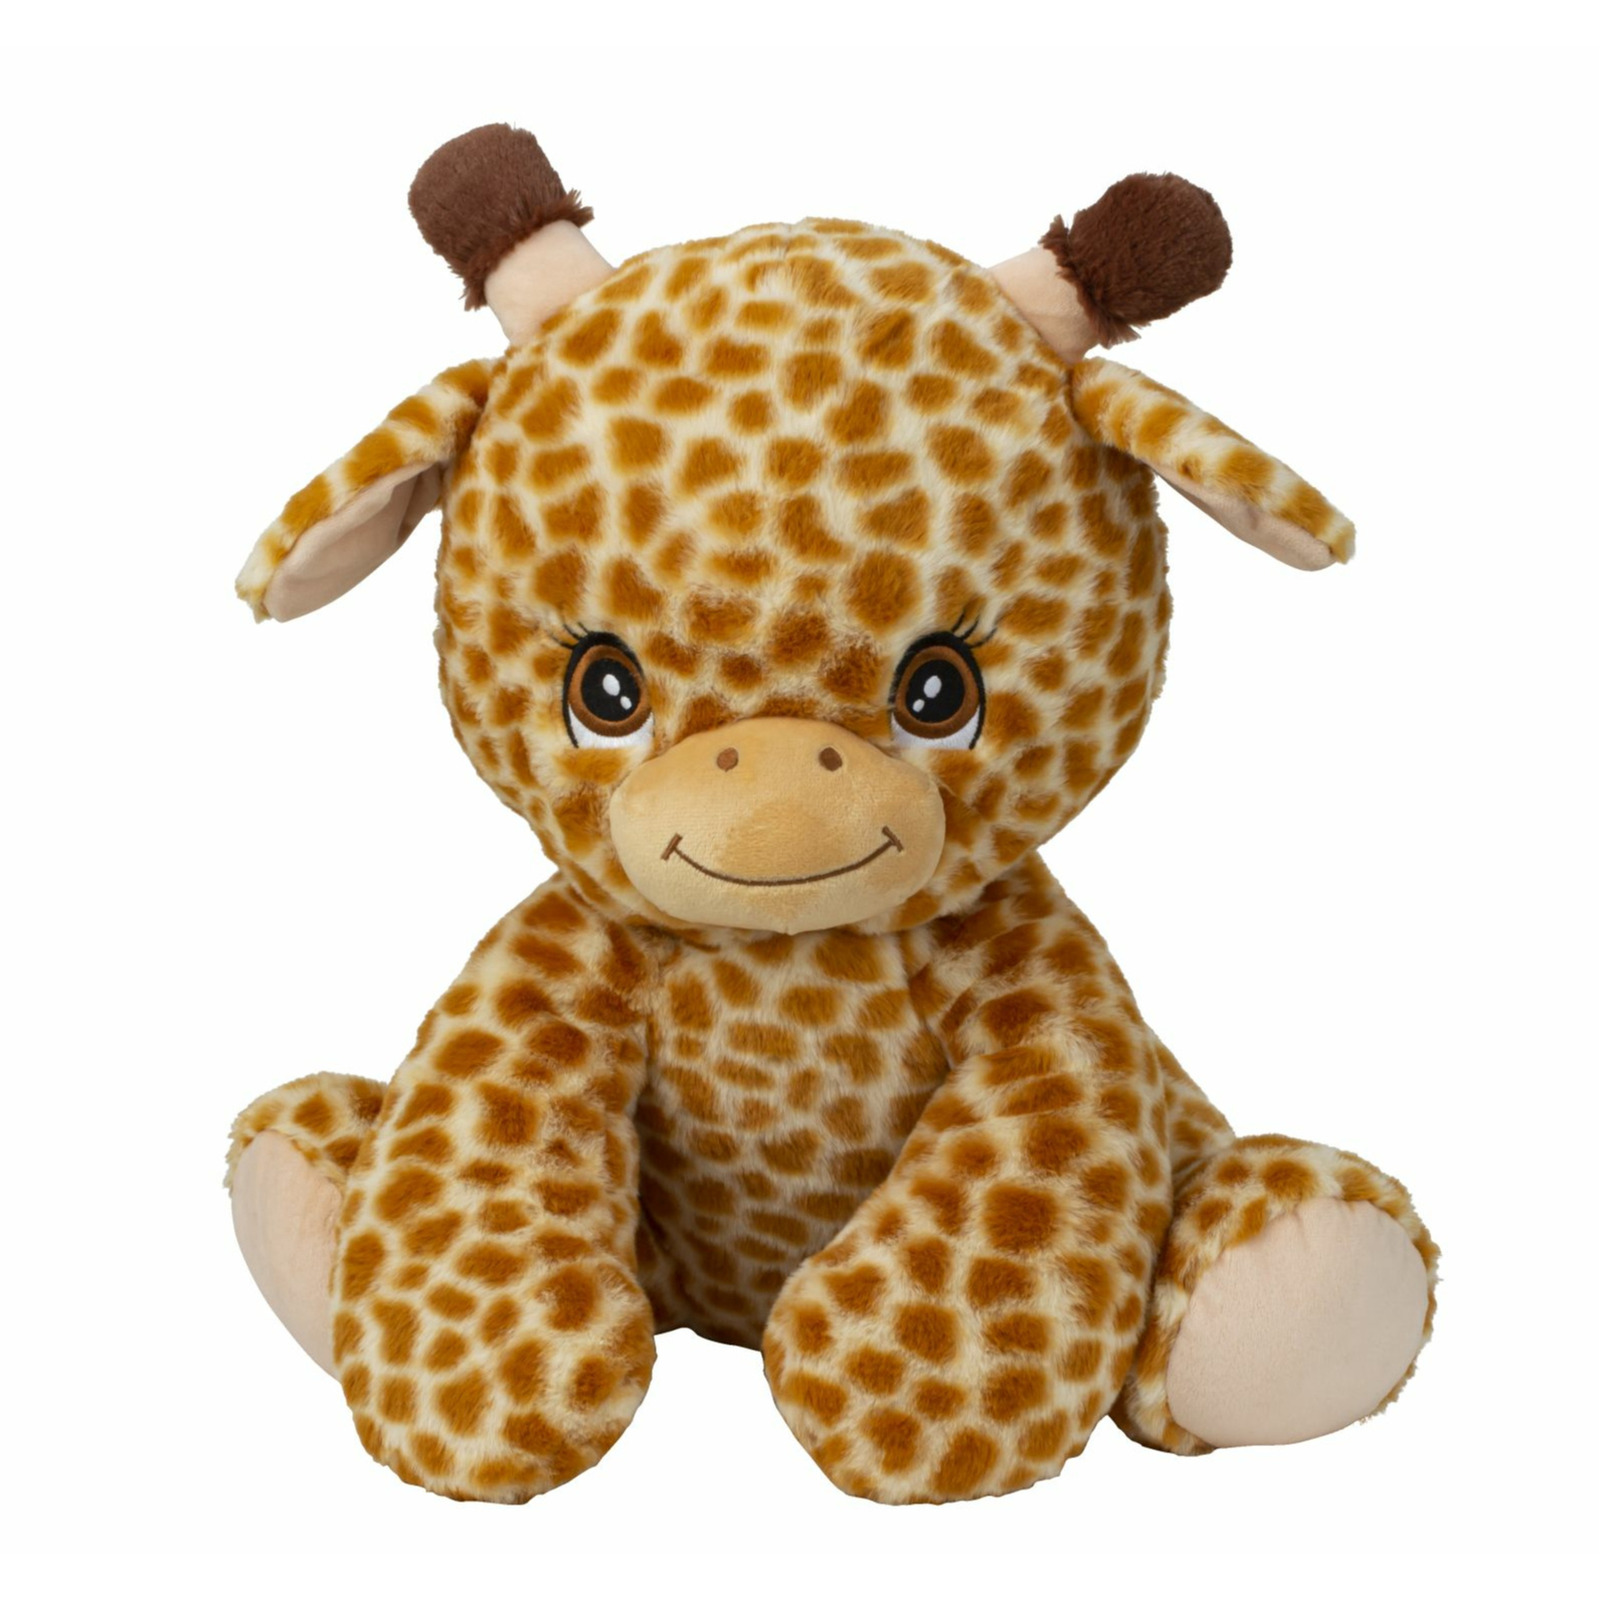 Giraffe knuffel van zachte pluche - speelgoed dieren - 44 cm